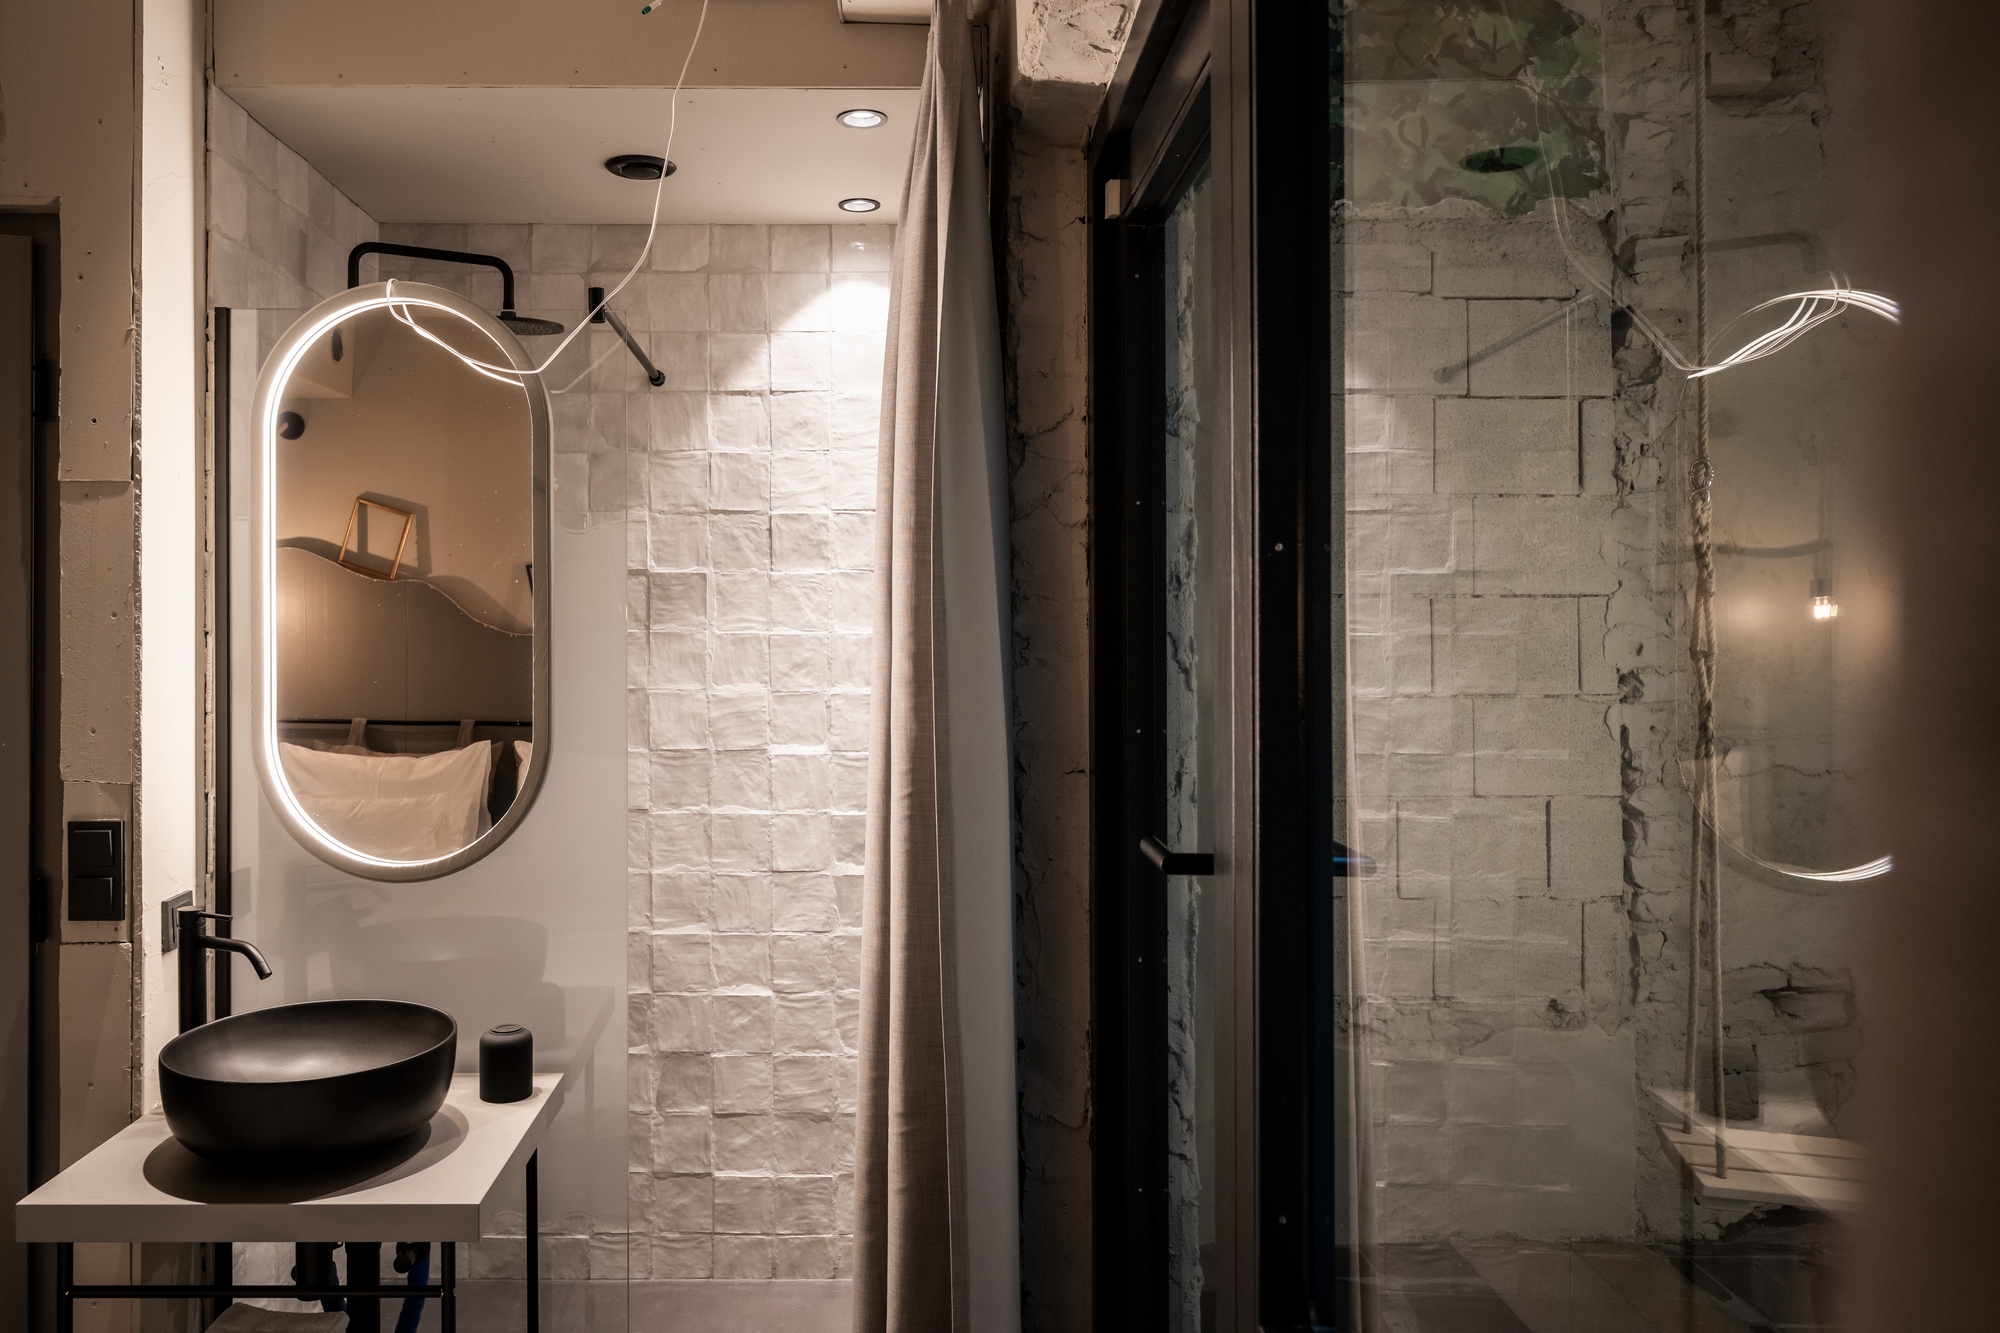 图片[12]|维赛斯克鲁兹酒店|ART-Arrakis | 建筑室内设计的创新与灵感